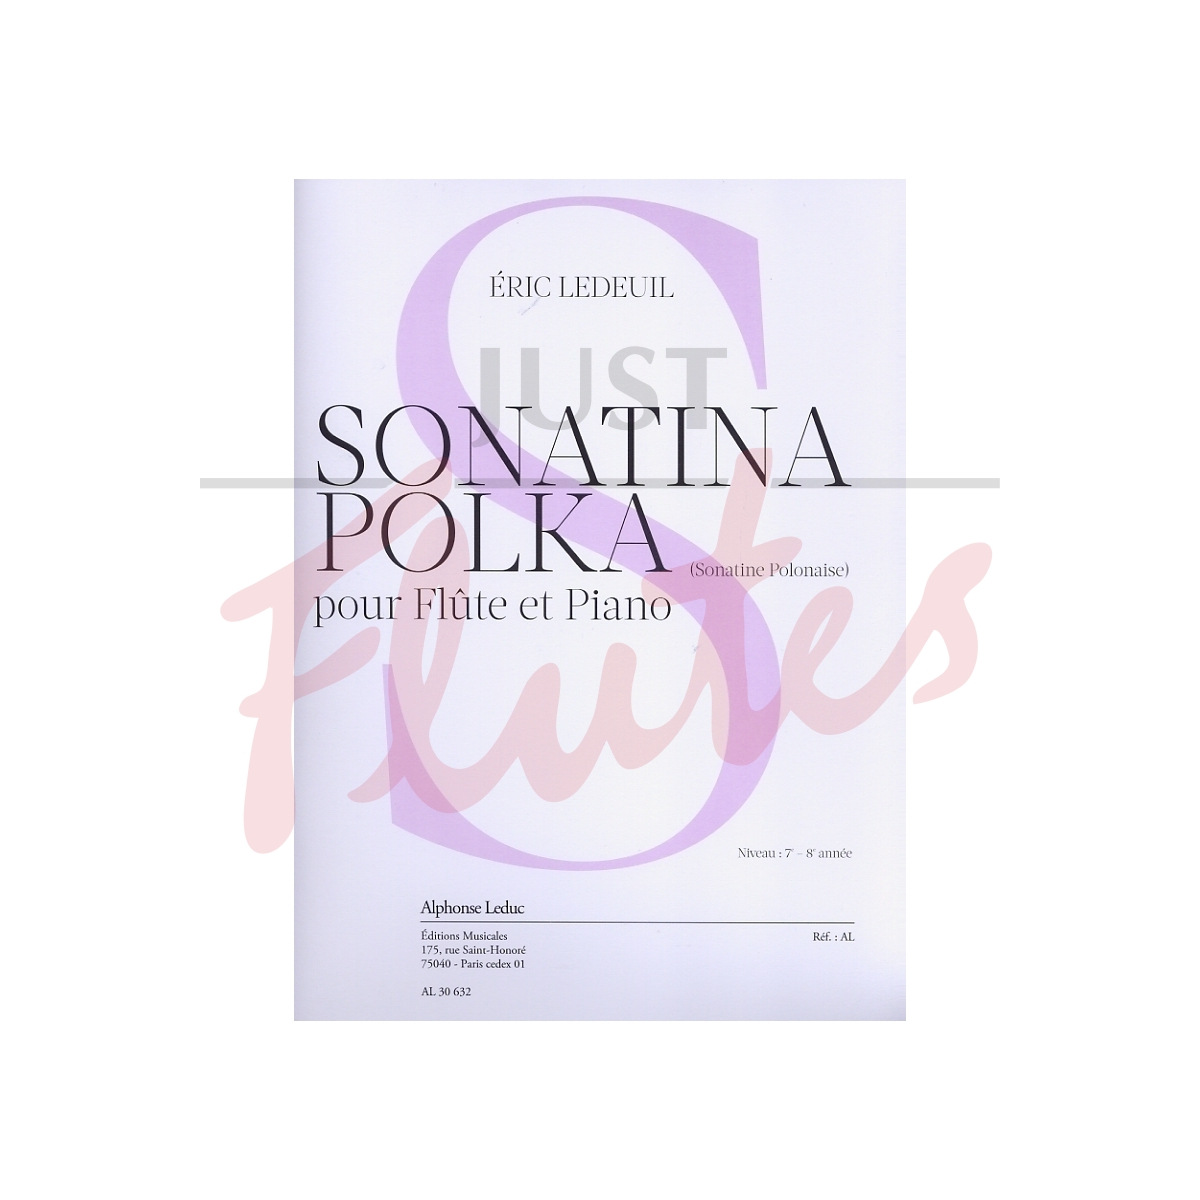 Sonatina Polka (Sonatine Polonaise)